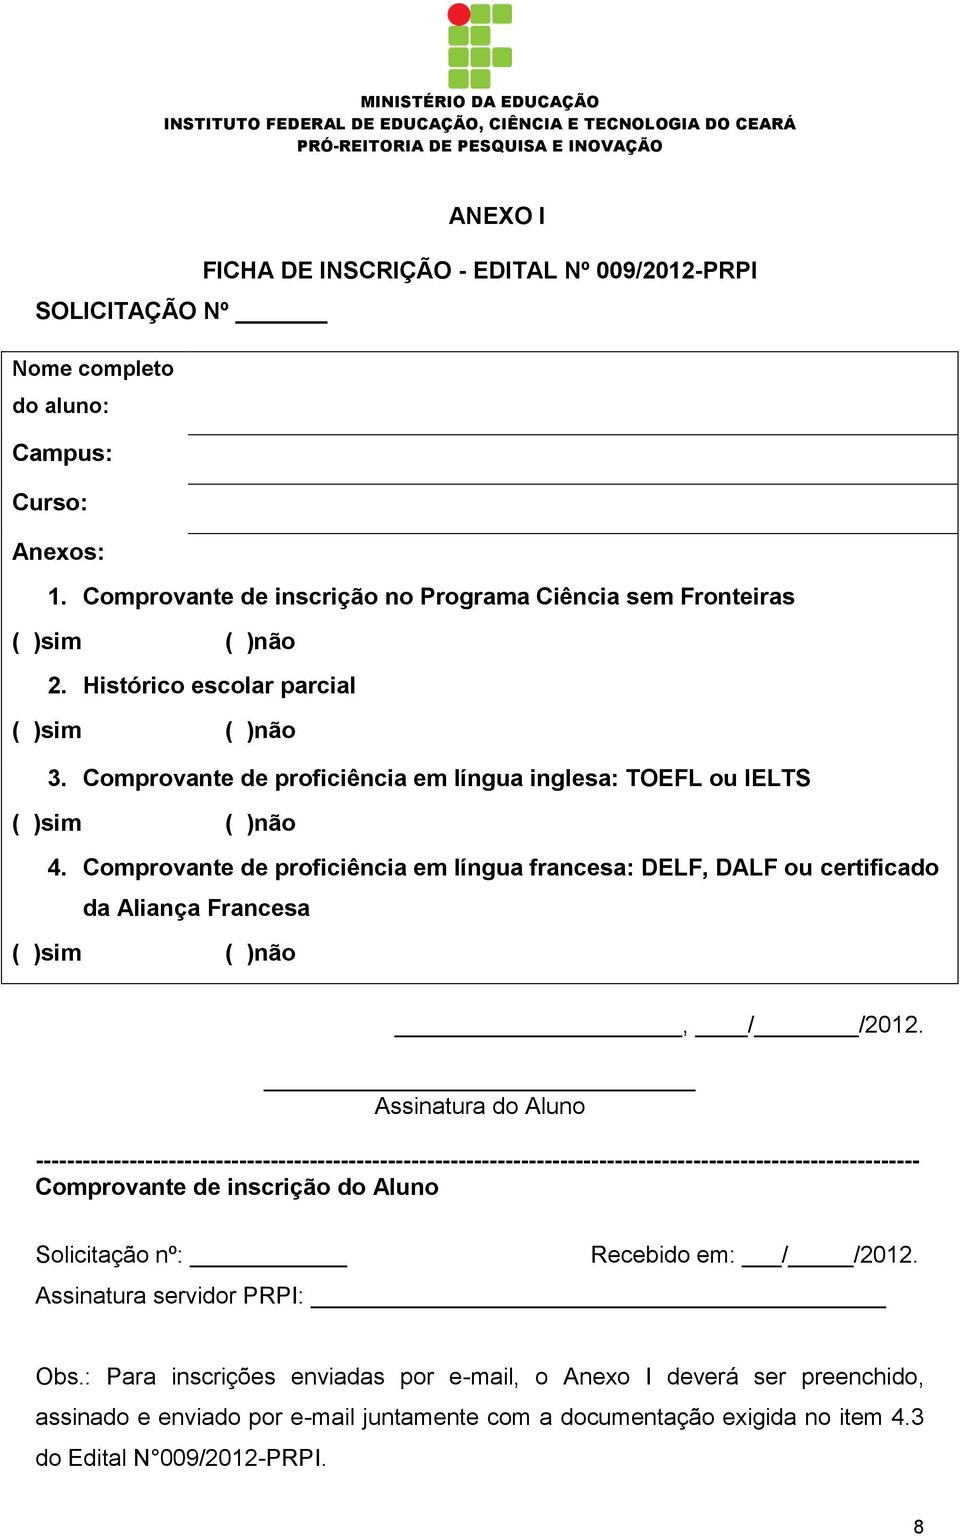 Comprovante de proficiência em língua francesa: DELF, DALF ou certificado da Aliança Francesa ( )sim ( )não, / /2012.